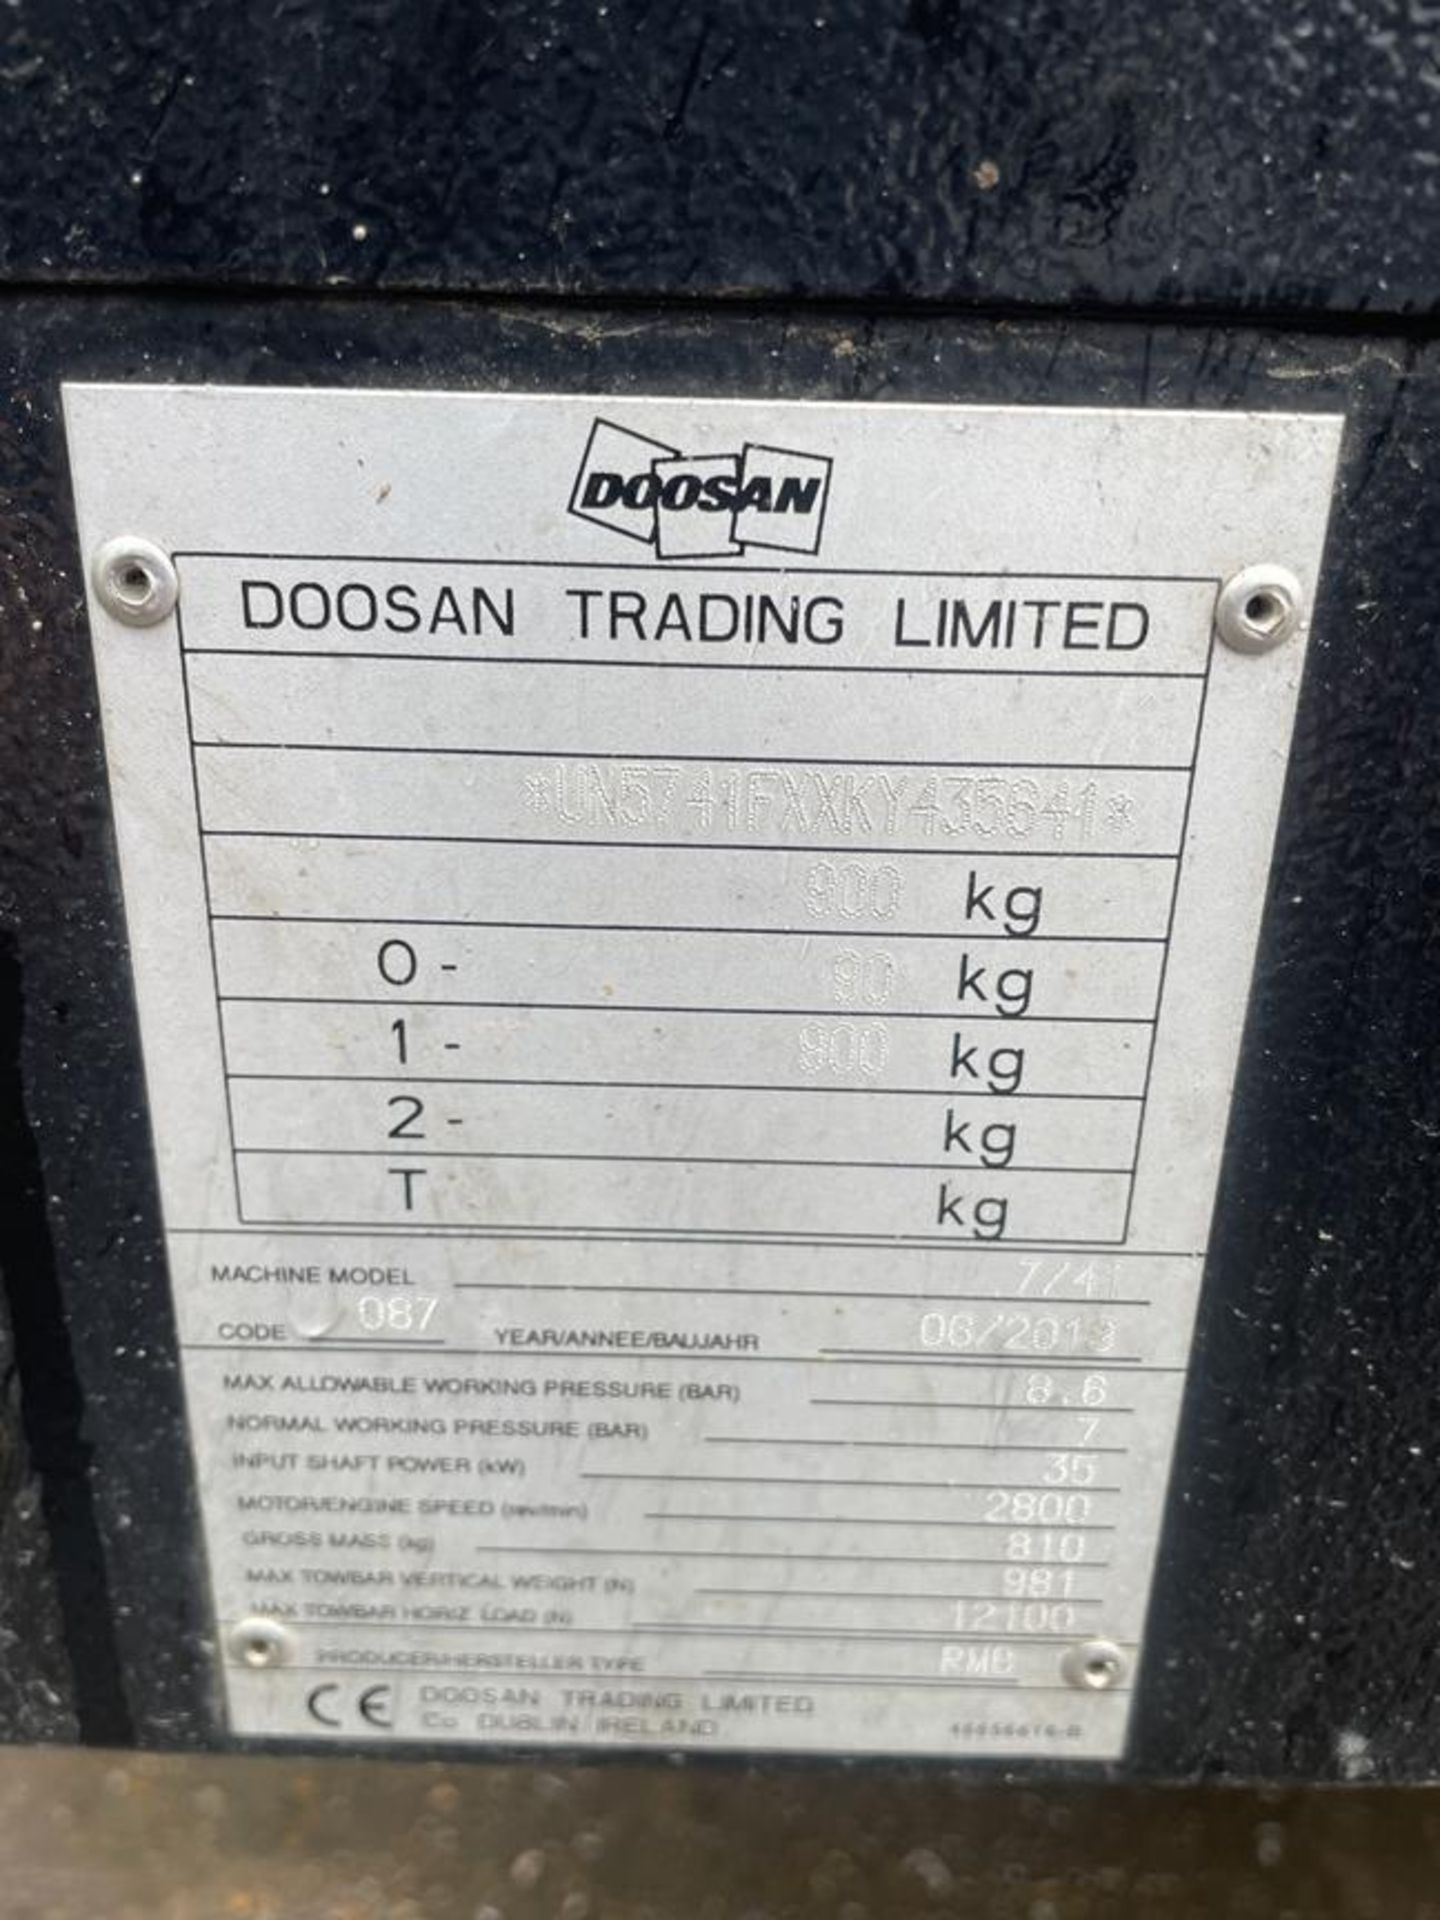 Doosan Model 7/41 Towable 7-Bar Air Compressor S/No. UN5741FXXKY435641, Run Hours: 232.7 - Image 4 of 9